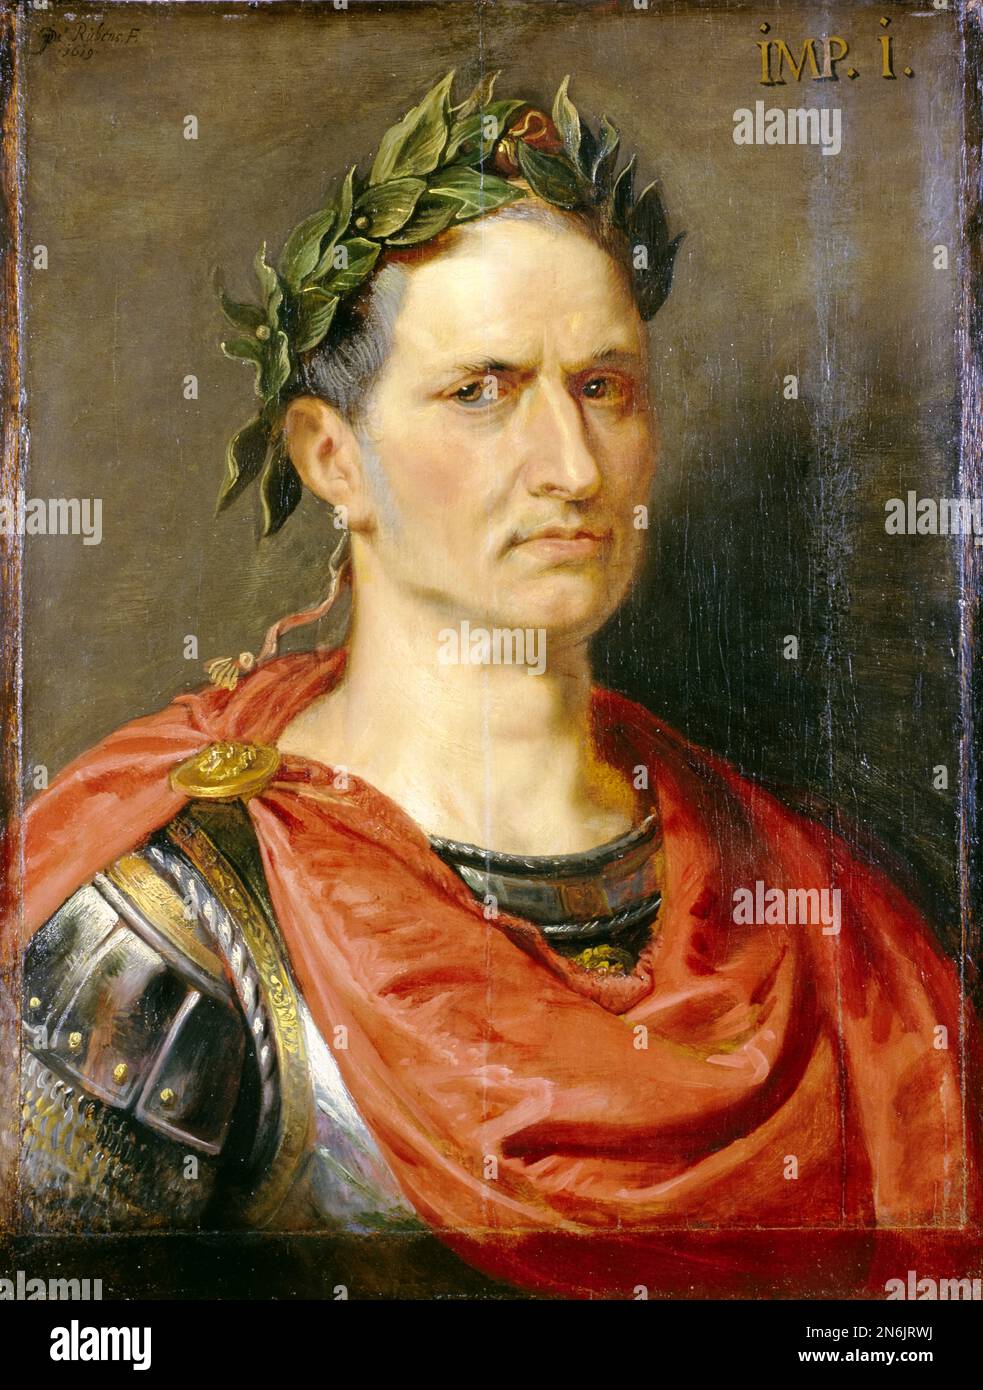 Gaïus Julius Caesar, (100BC-44BC), général romain et dictateur, portrait peint à l'huile sur bois par Peter Paul Rubens, 1616-1625 Banque D'Images